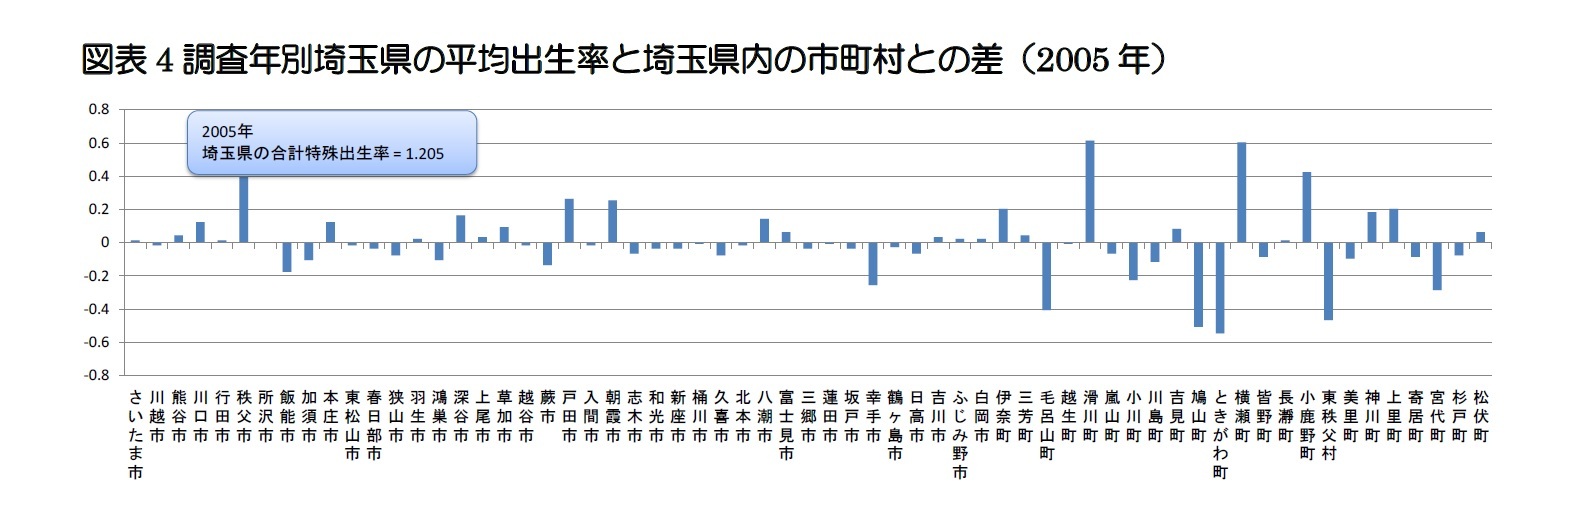 図表4 調査年別埼玉県の平均出生率と埼玉県内の市町村との差（2005年）